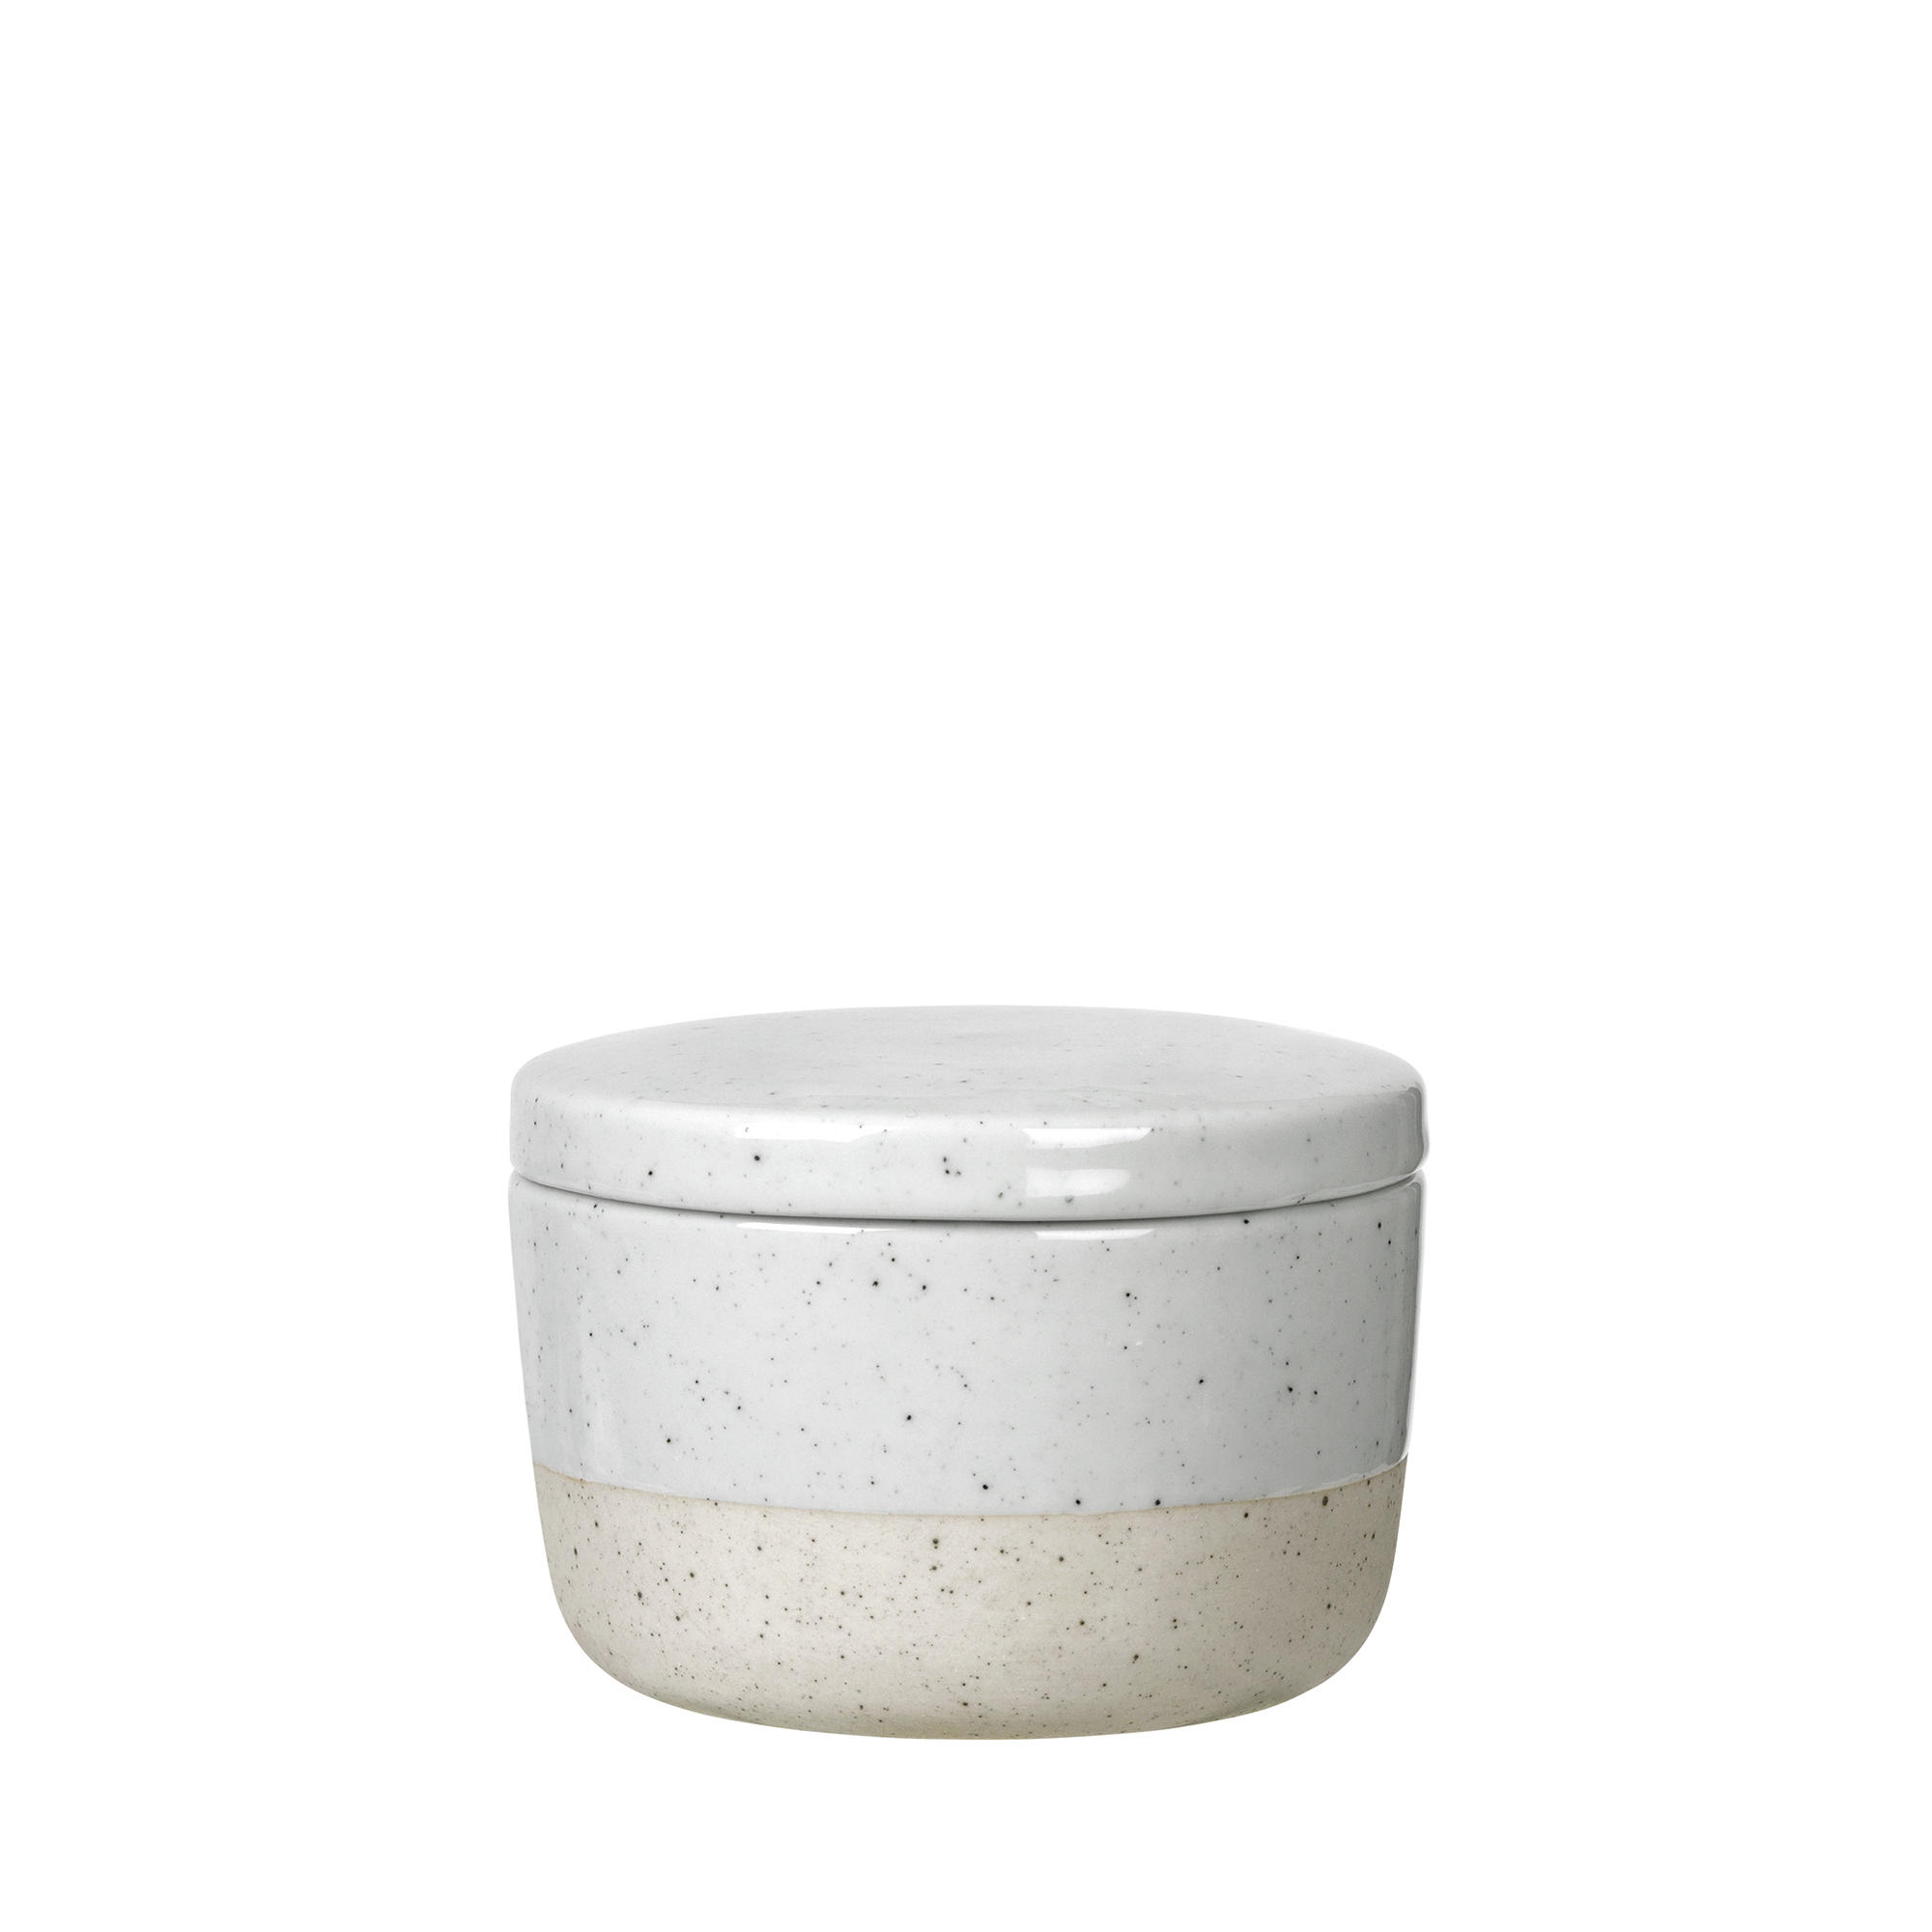 ZUCKERDOSE Keramik  - Beige/Grau, Design, Keramik (8,5/6cm) - Blomus